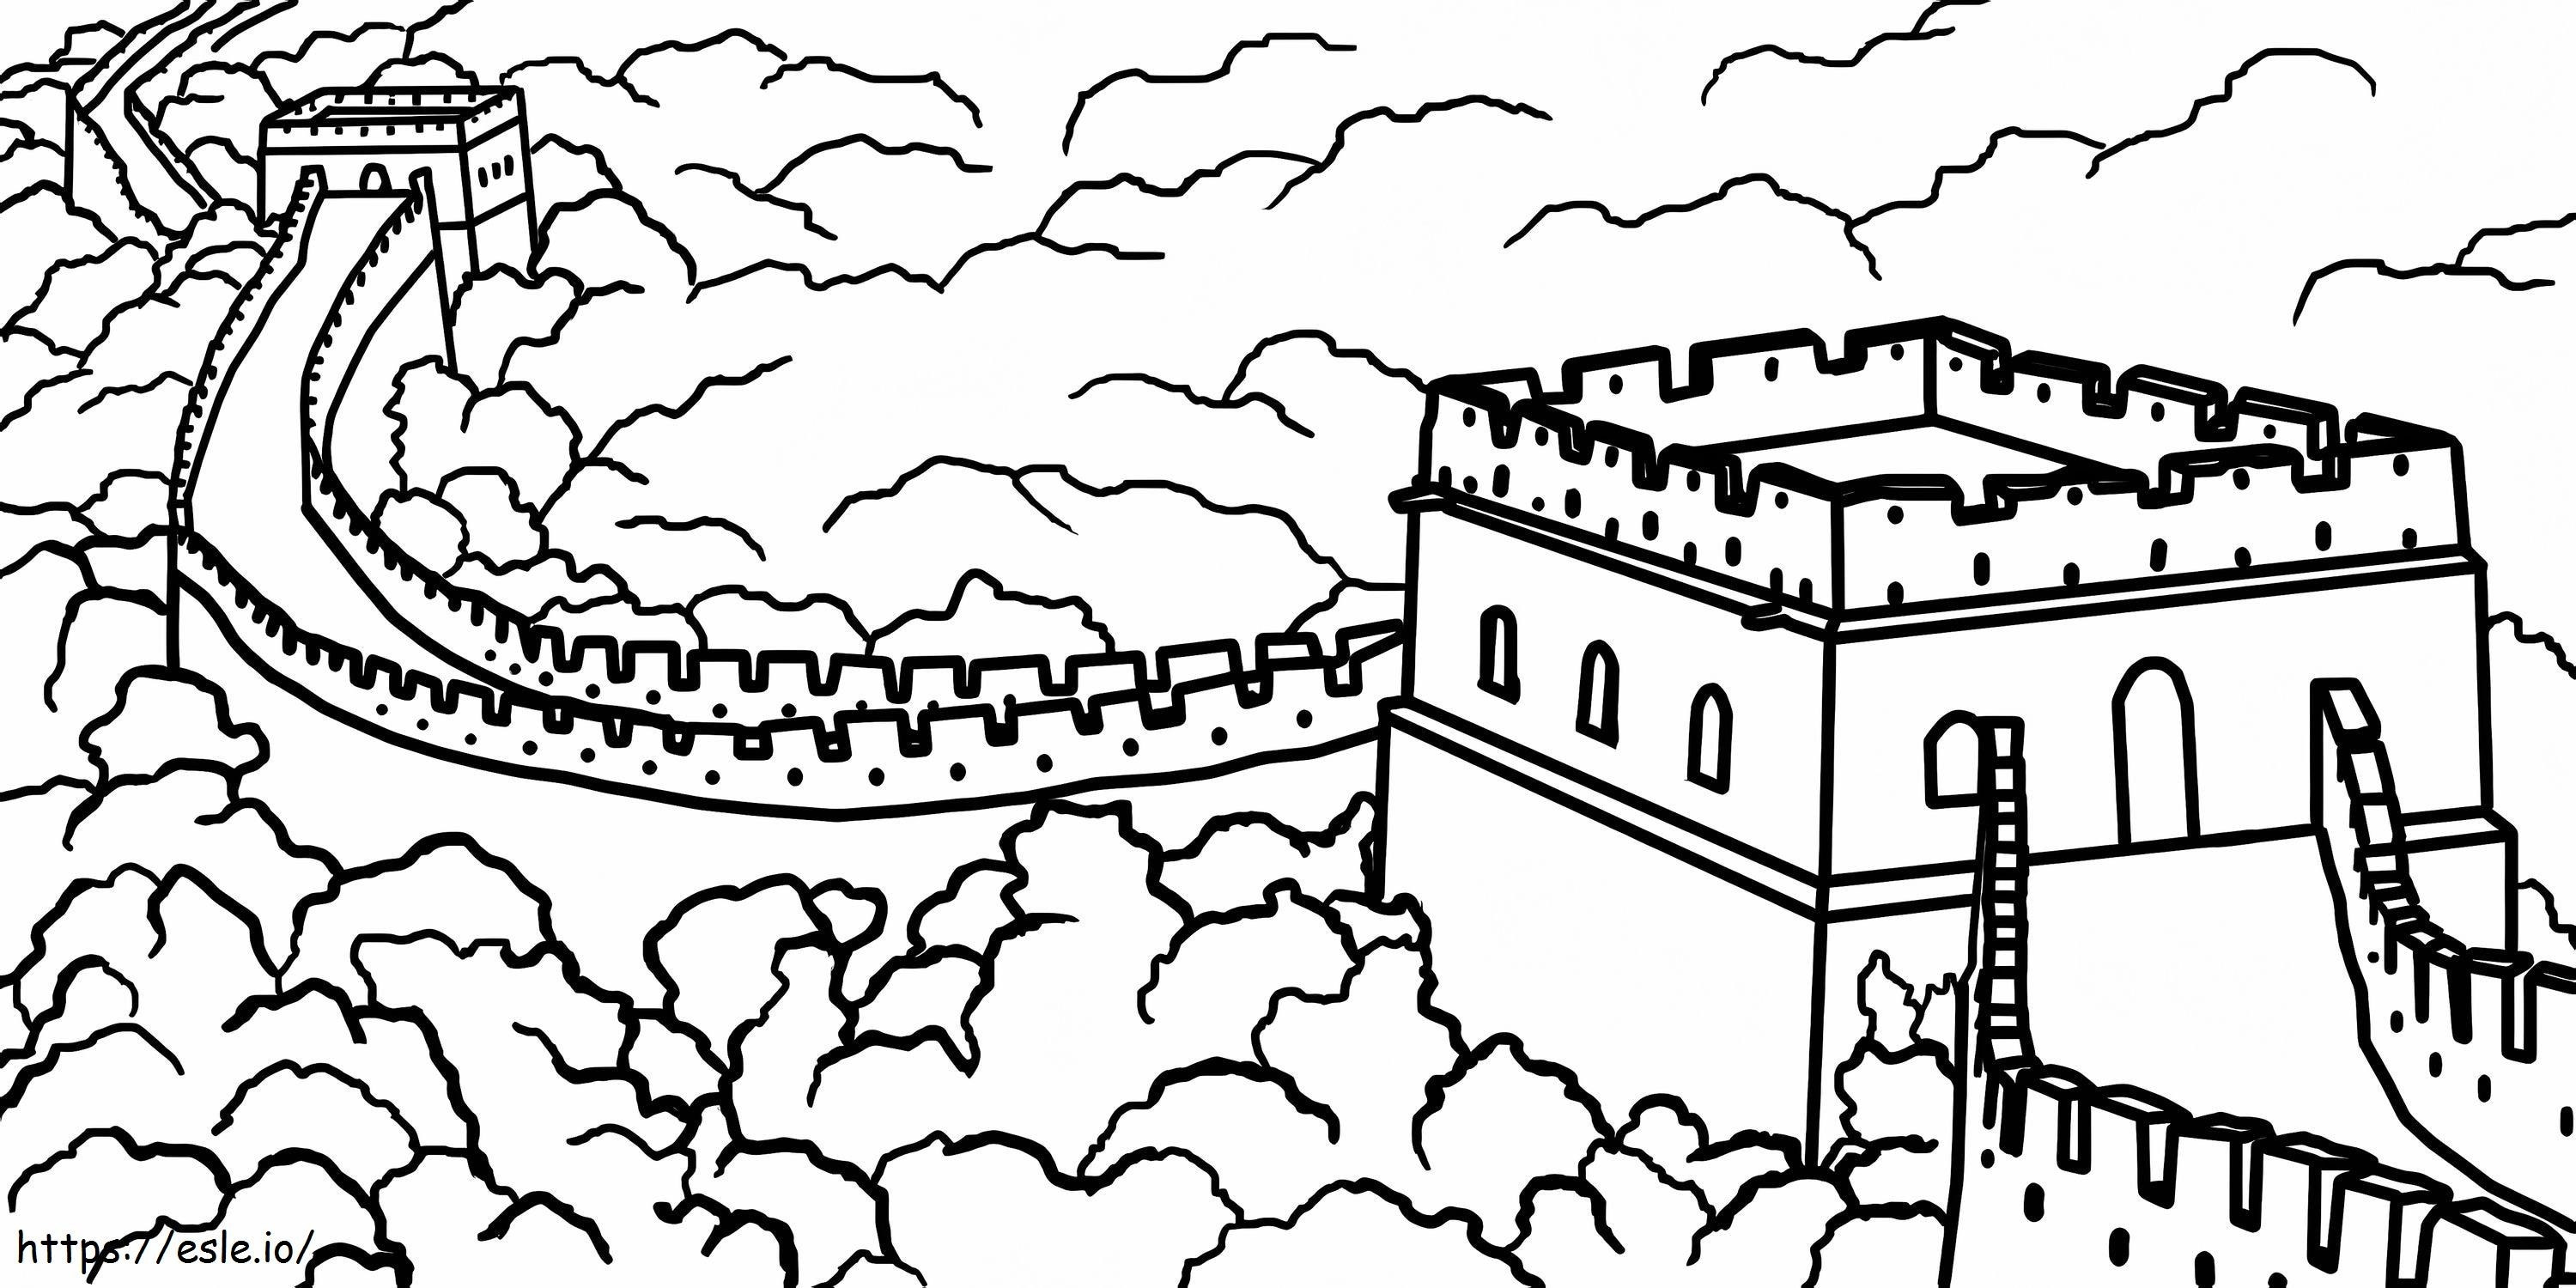 Zeichnung der Chinesischen Mauer ausmalbilder